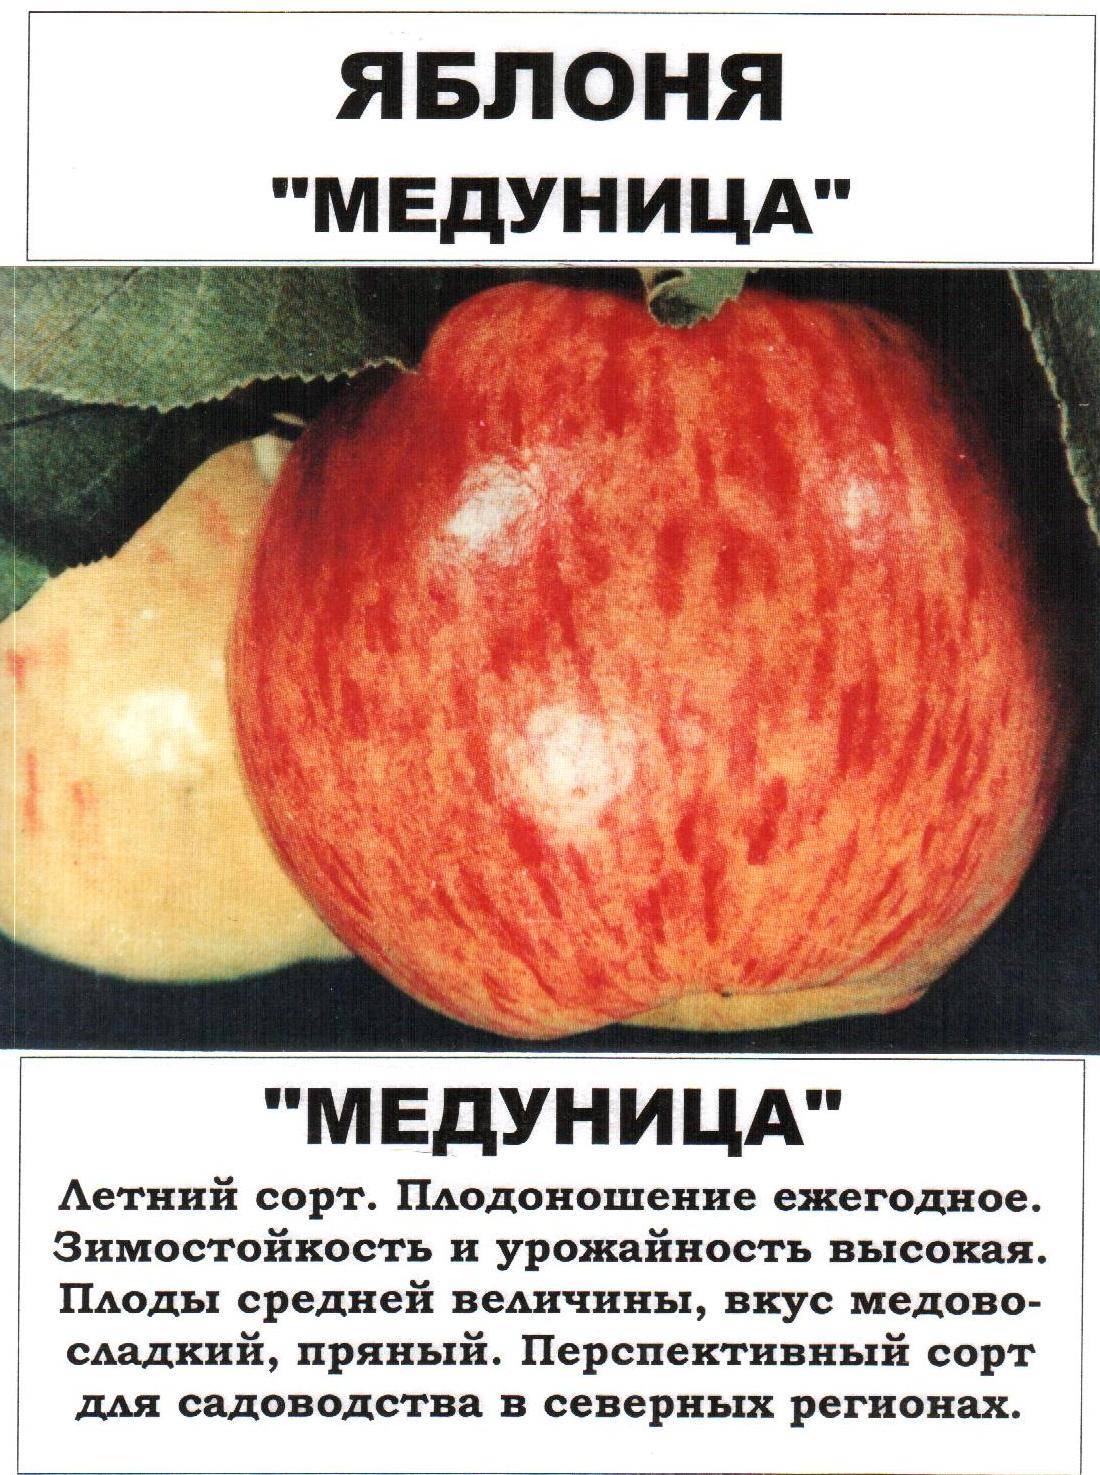 Яблоня "медуница": описание сорта, посадка, борьба с вредителями и фото selo.guru — интернет портал о сельском хозяйстве